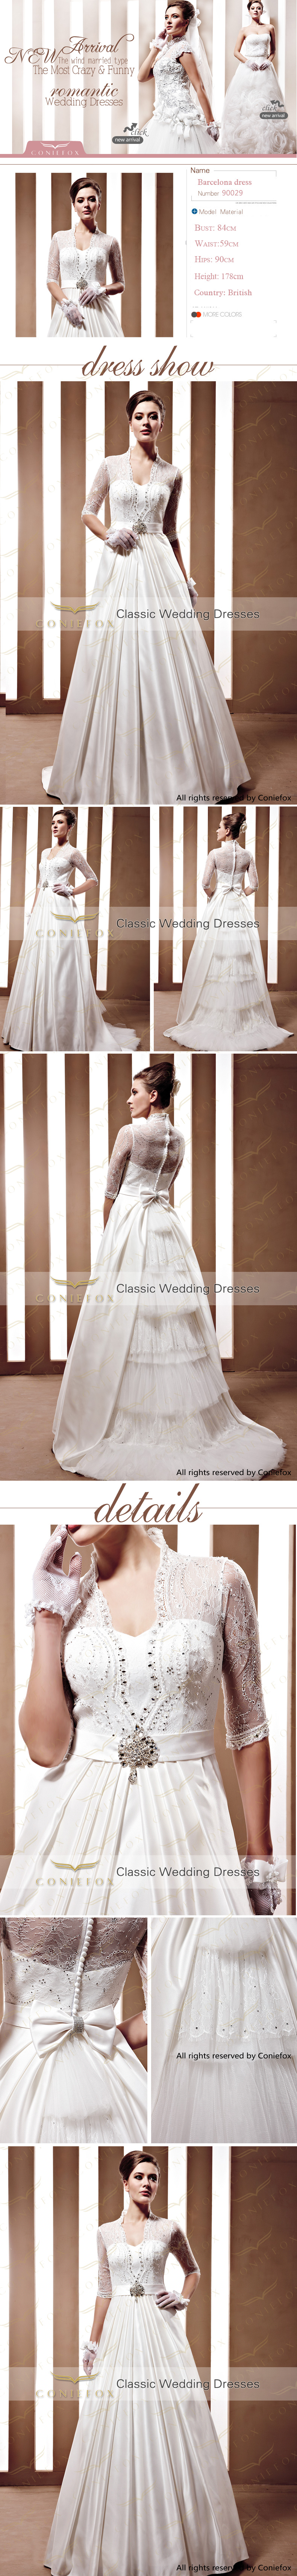 الفضيتألقي بيوم زفافك بأرقى كوشة من تصميم المصمم بوشهري تألقي